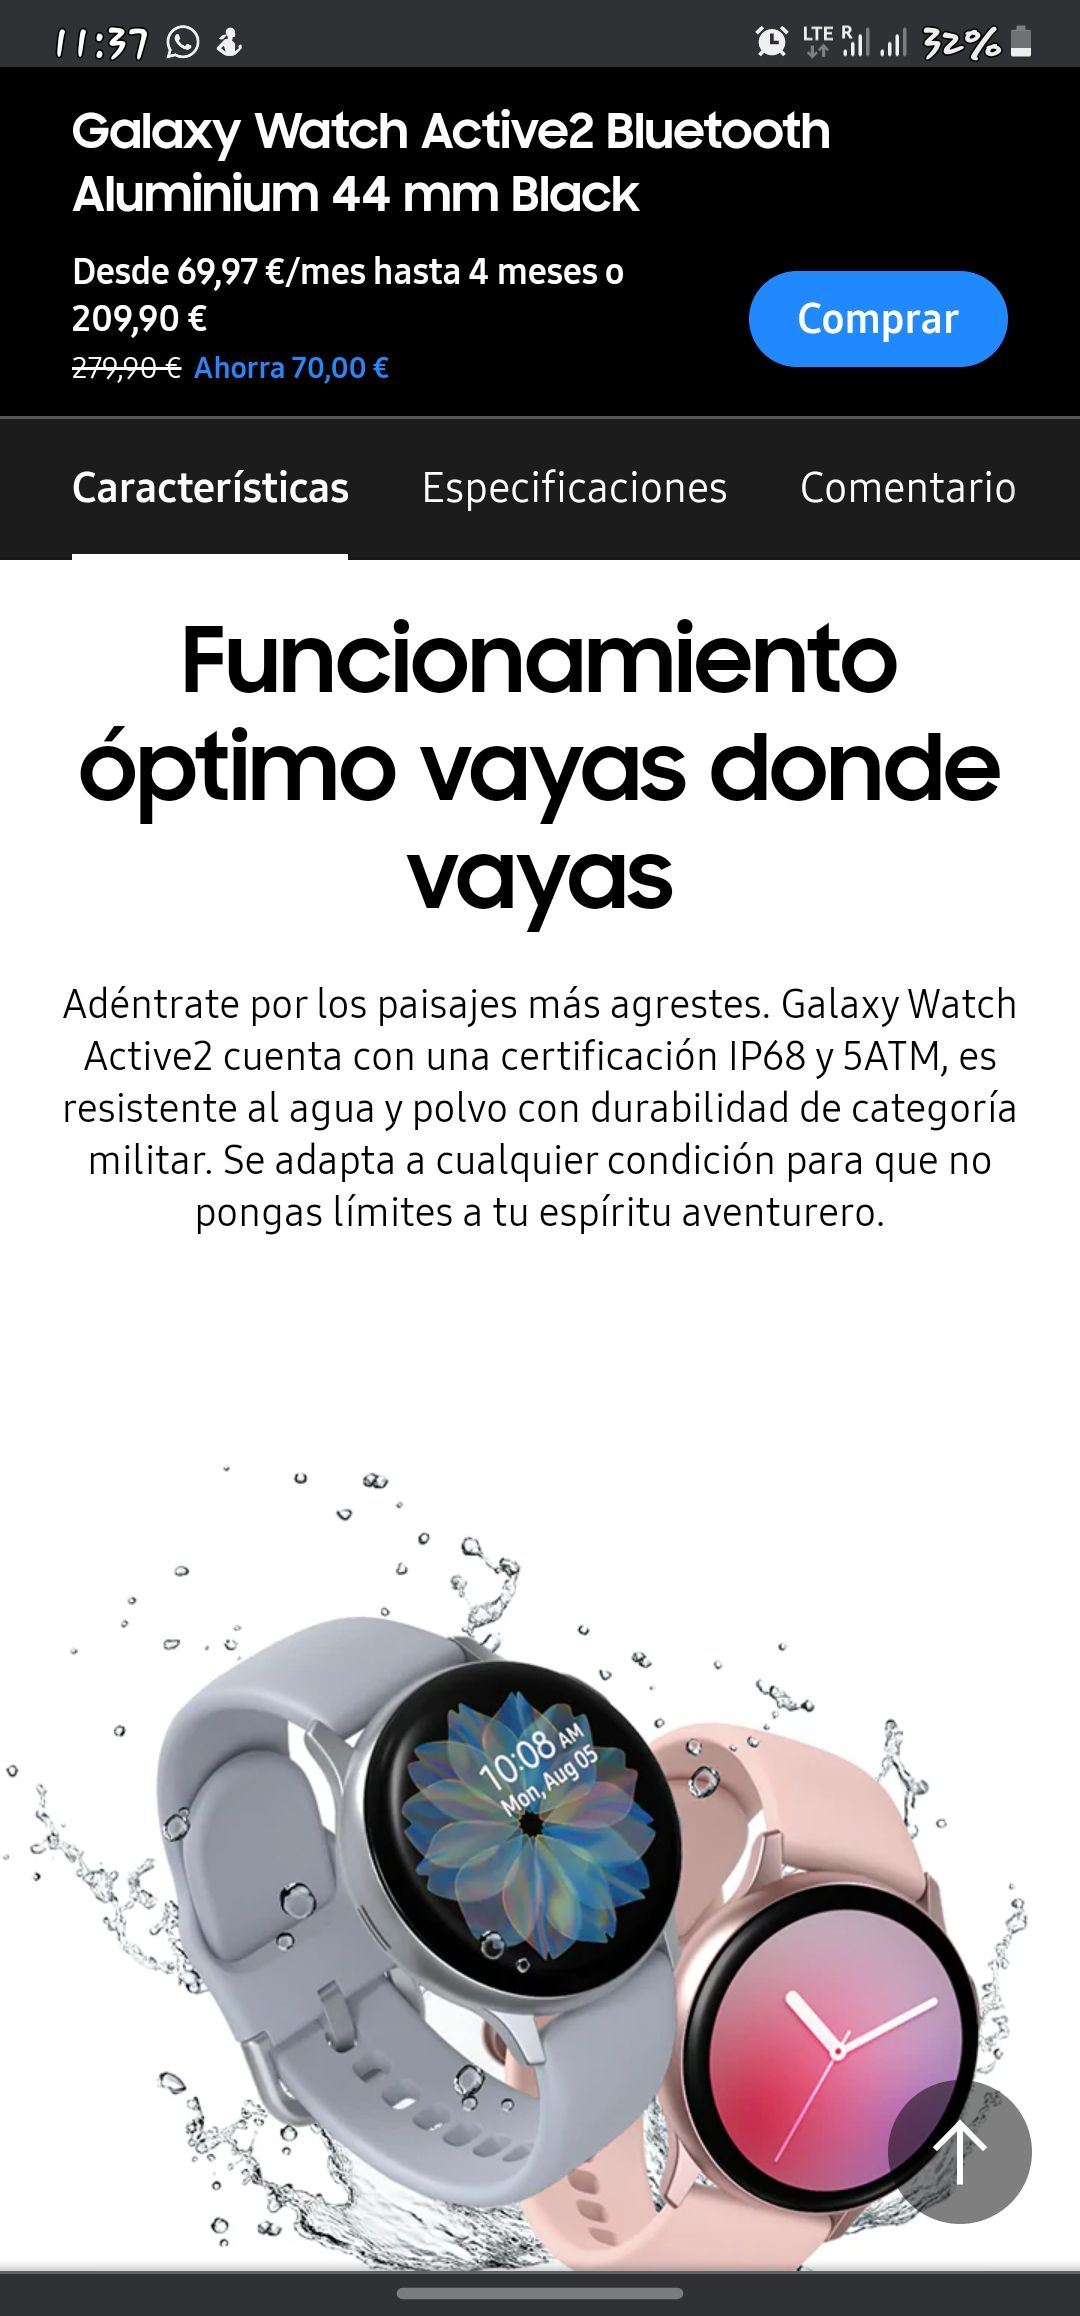 El galaxy watch active 2 - Samsung Members